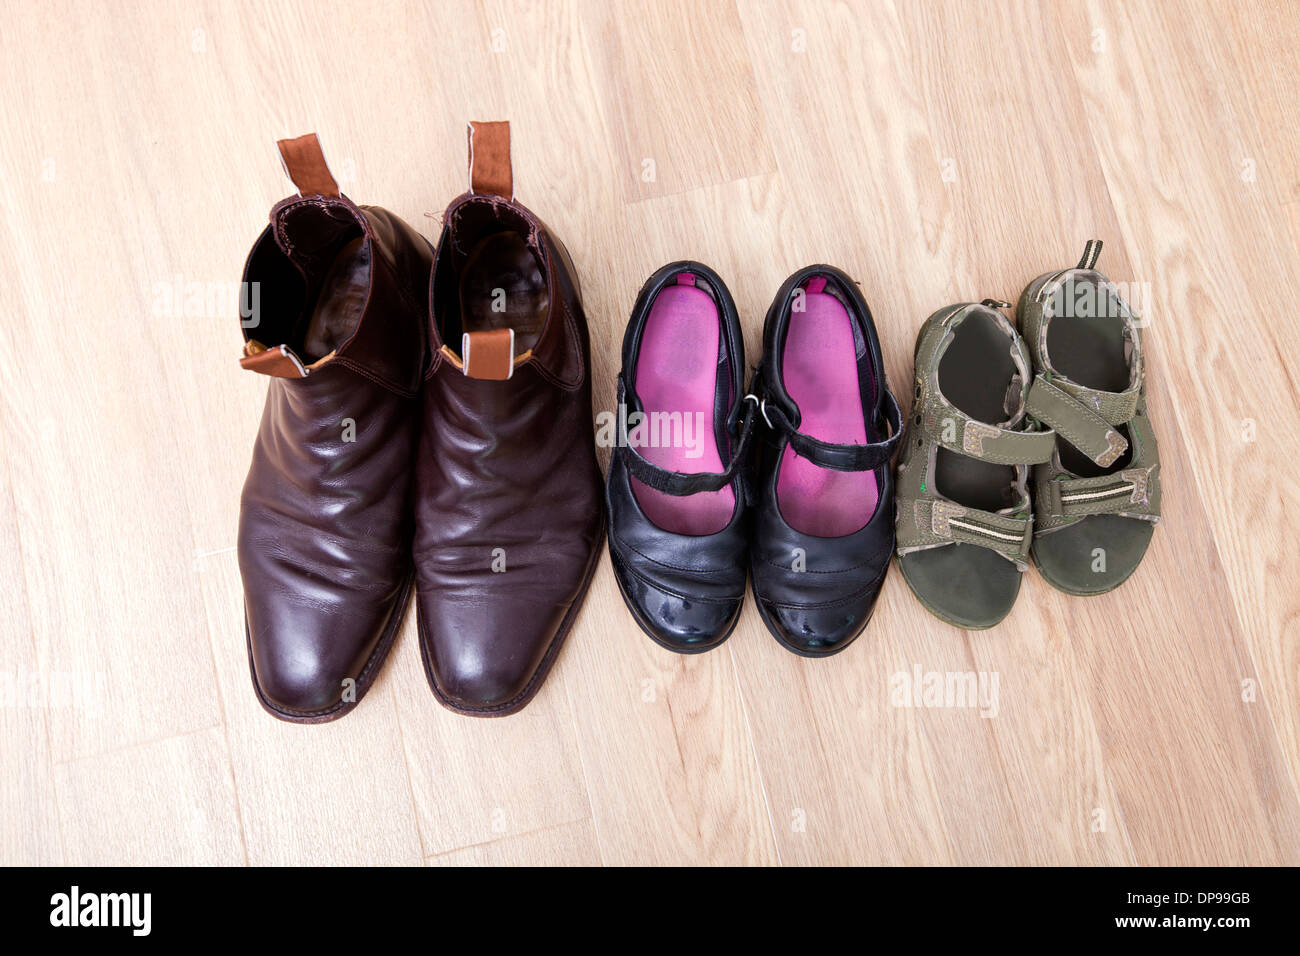 Elevato angolo di visione della famiglia scarpe messo in fila sul pavimento di legno duro Foto Stock